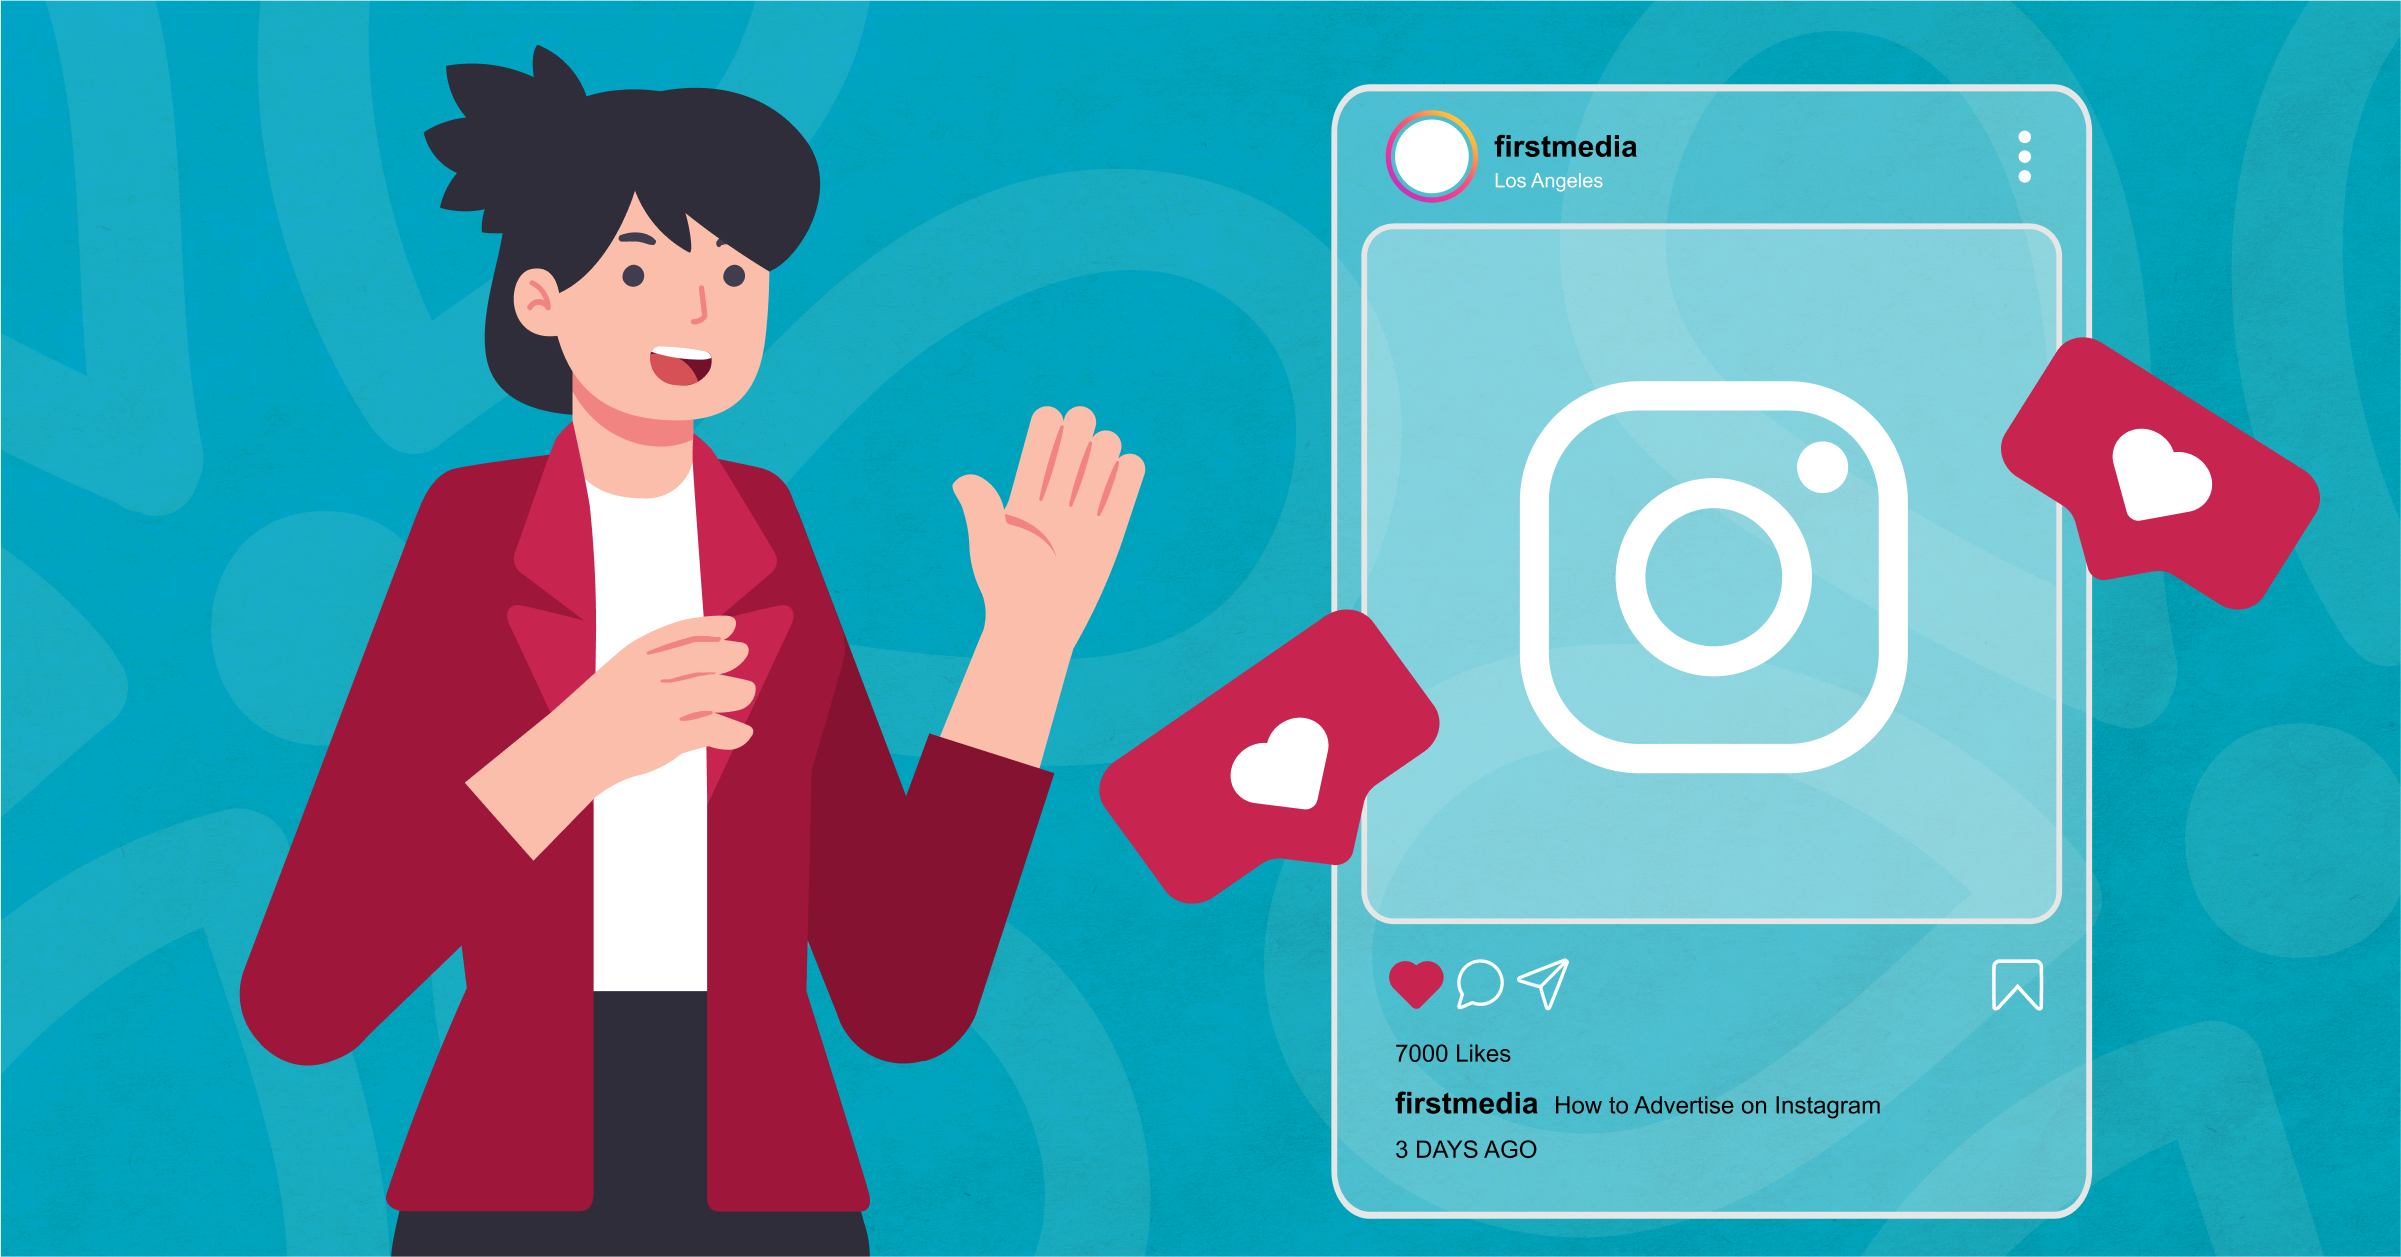 Marketing Director explains social media instagram advertising